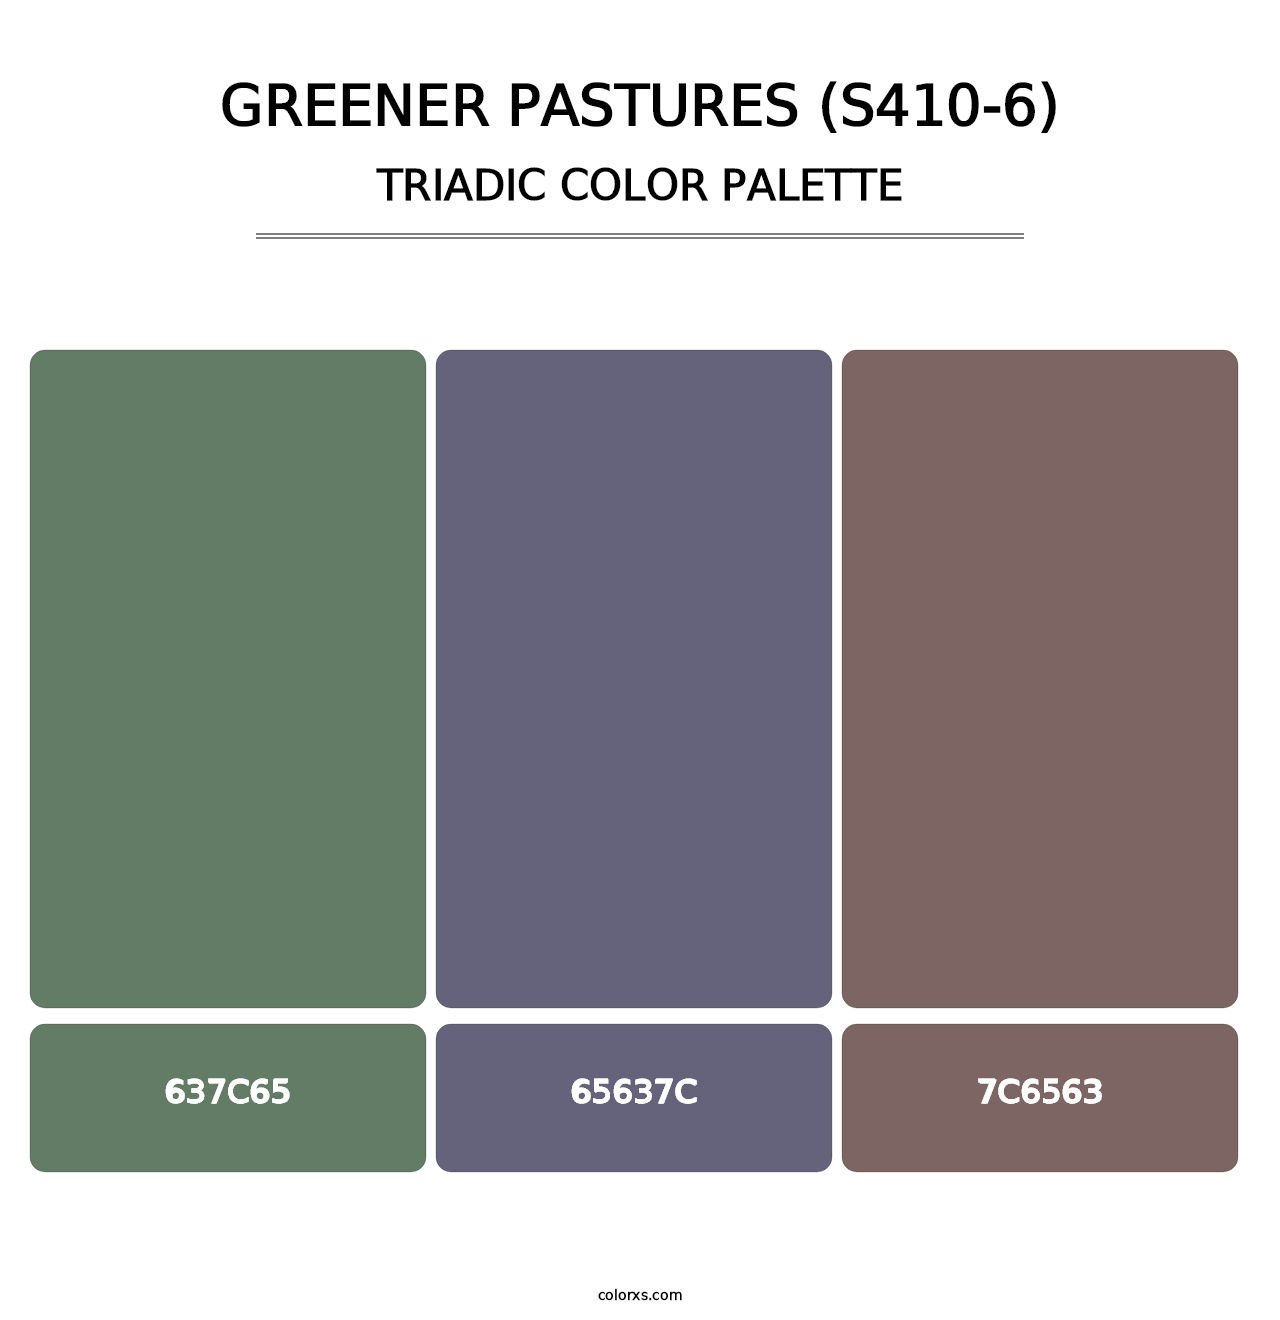 Greener Pastures (S410-6) - Triadic Color Palette